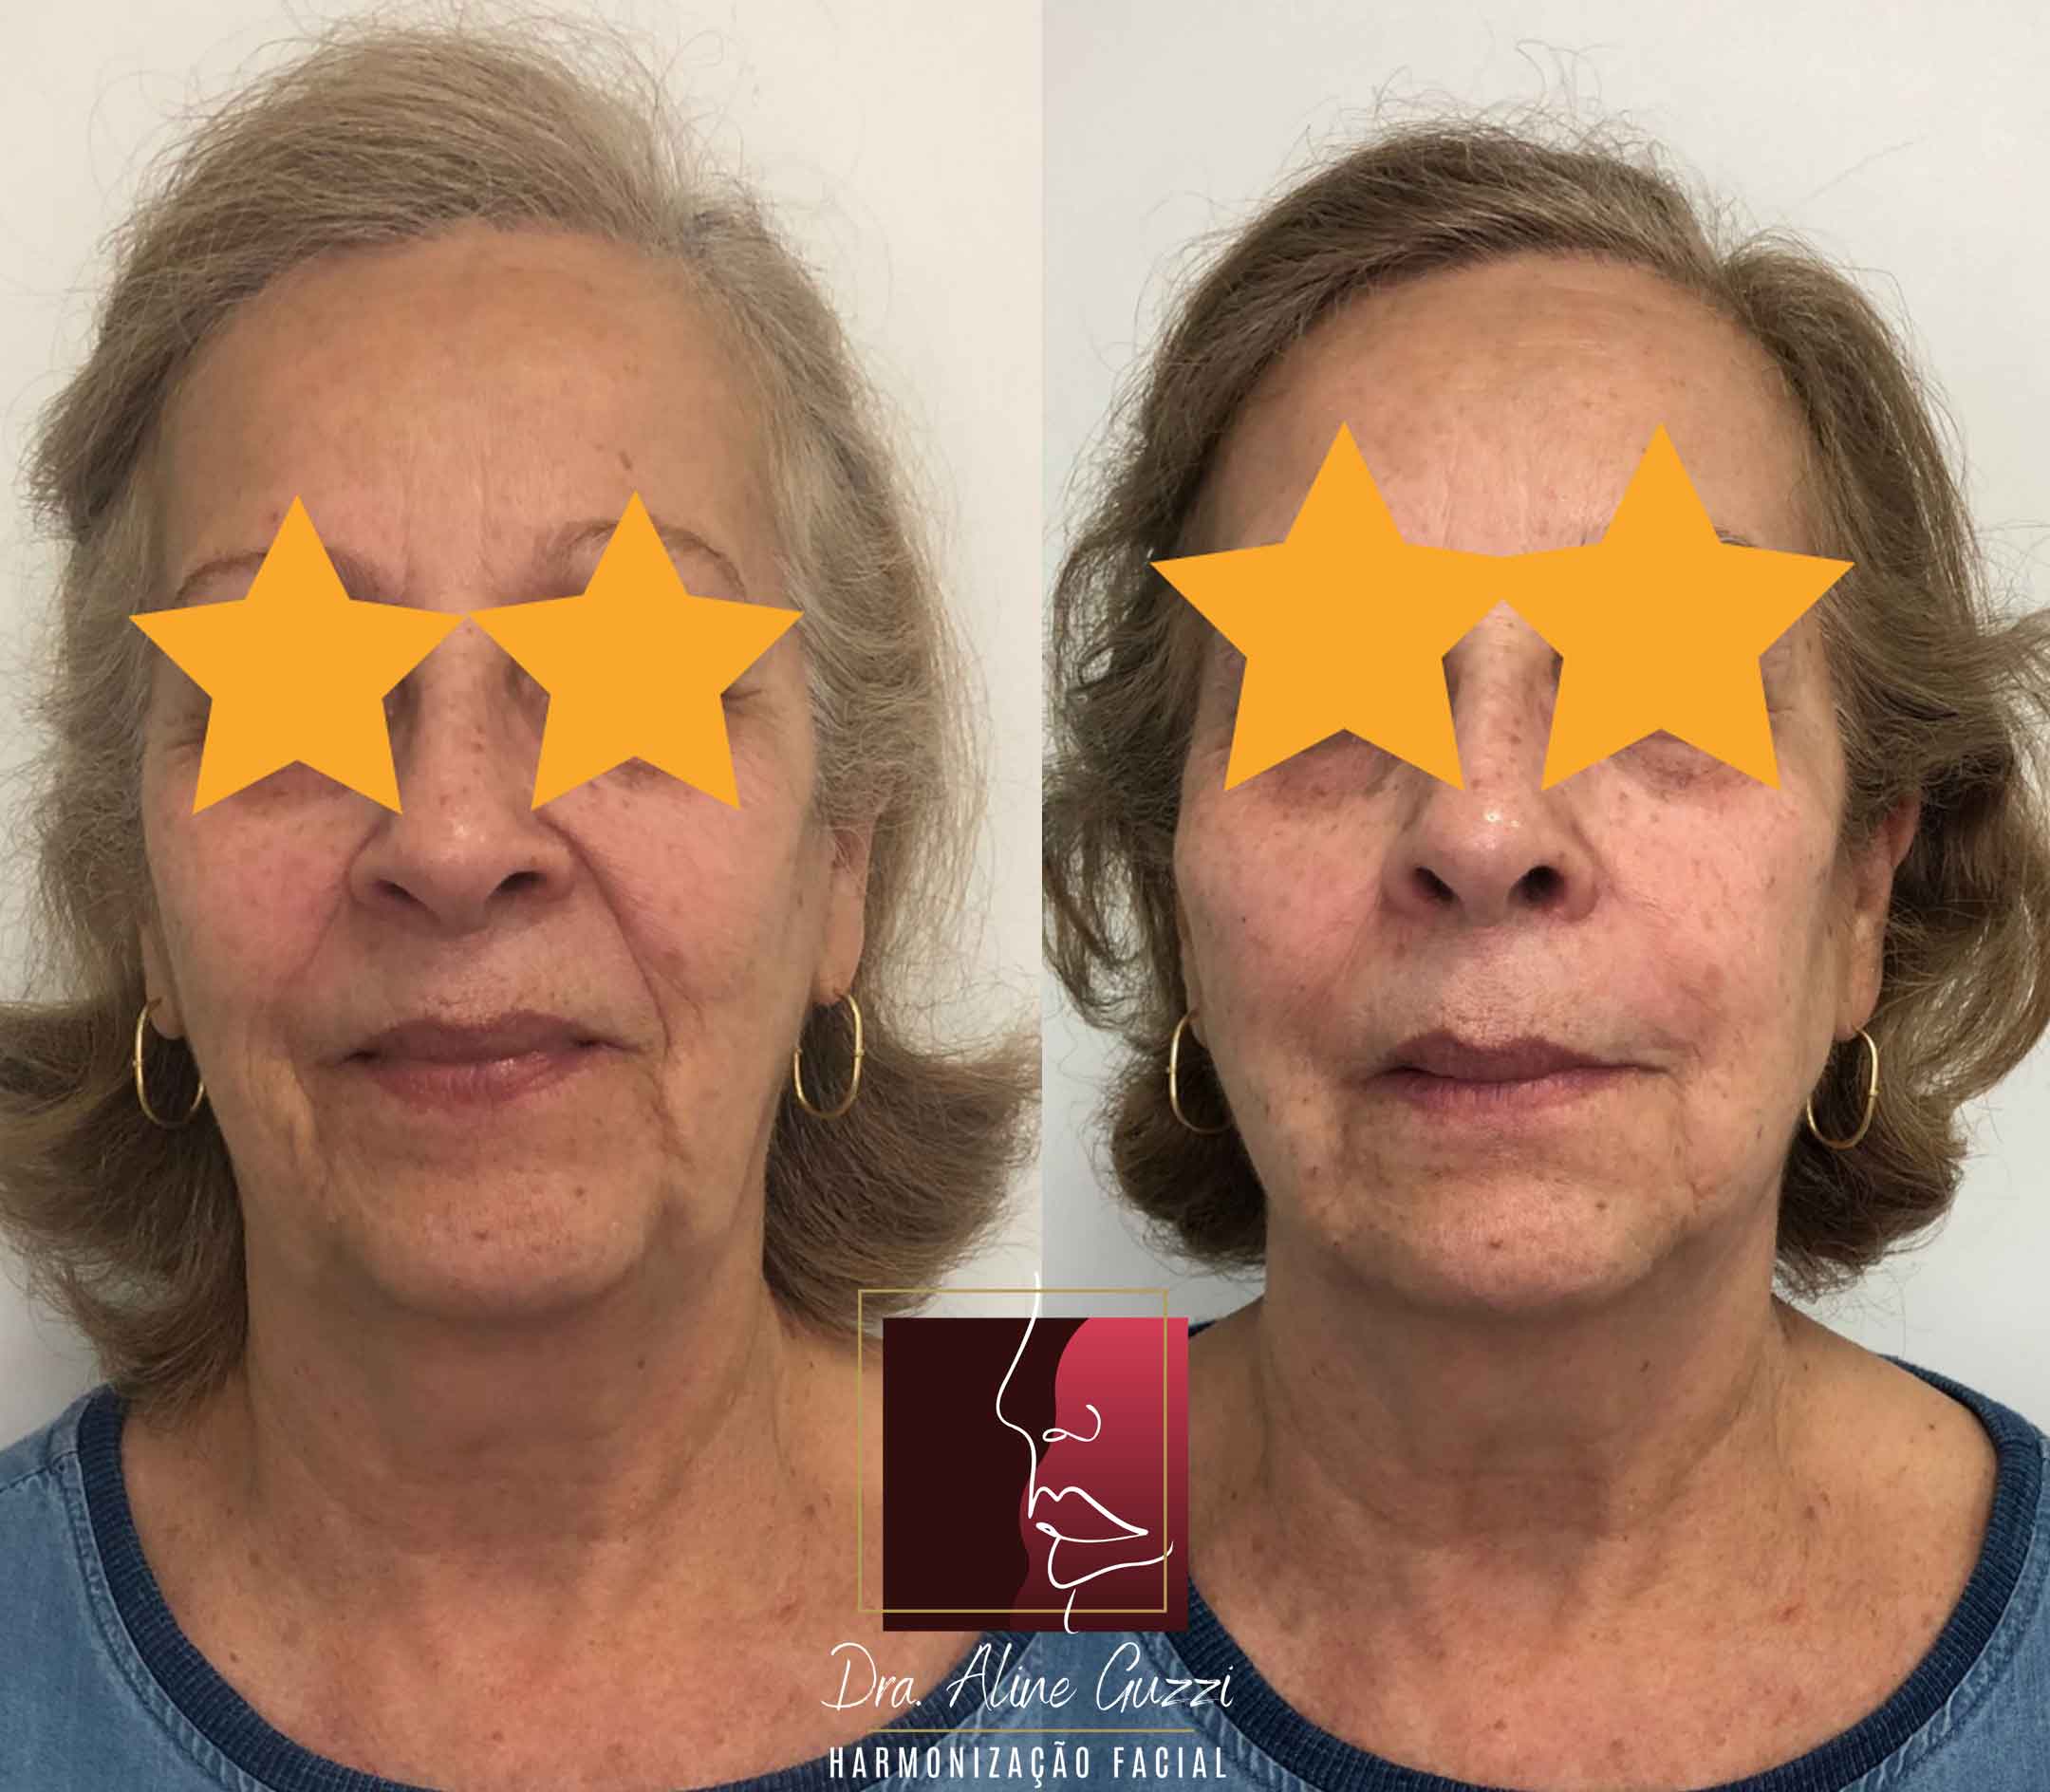 Harmonização Facial - Dra. Aline Guzzi: Caso Clínico de Bioestimulador